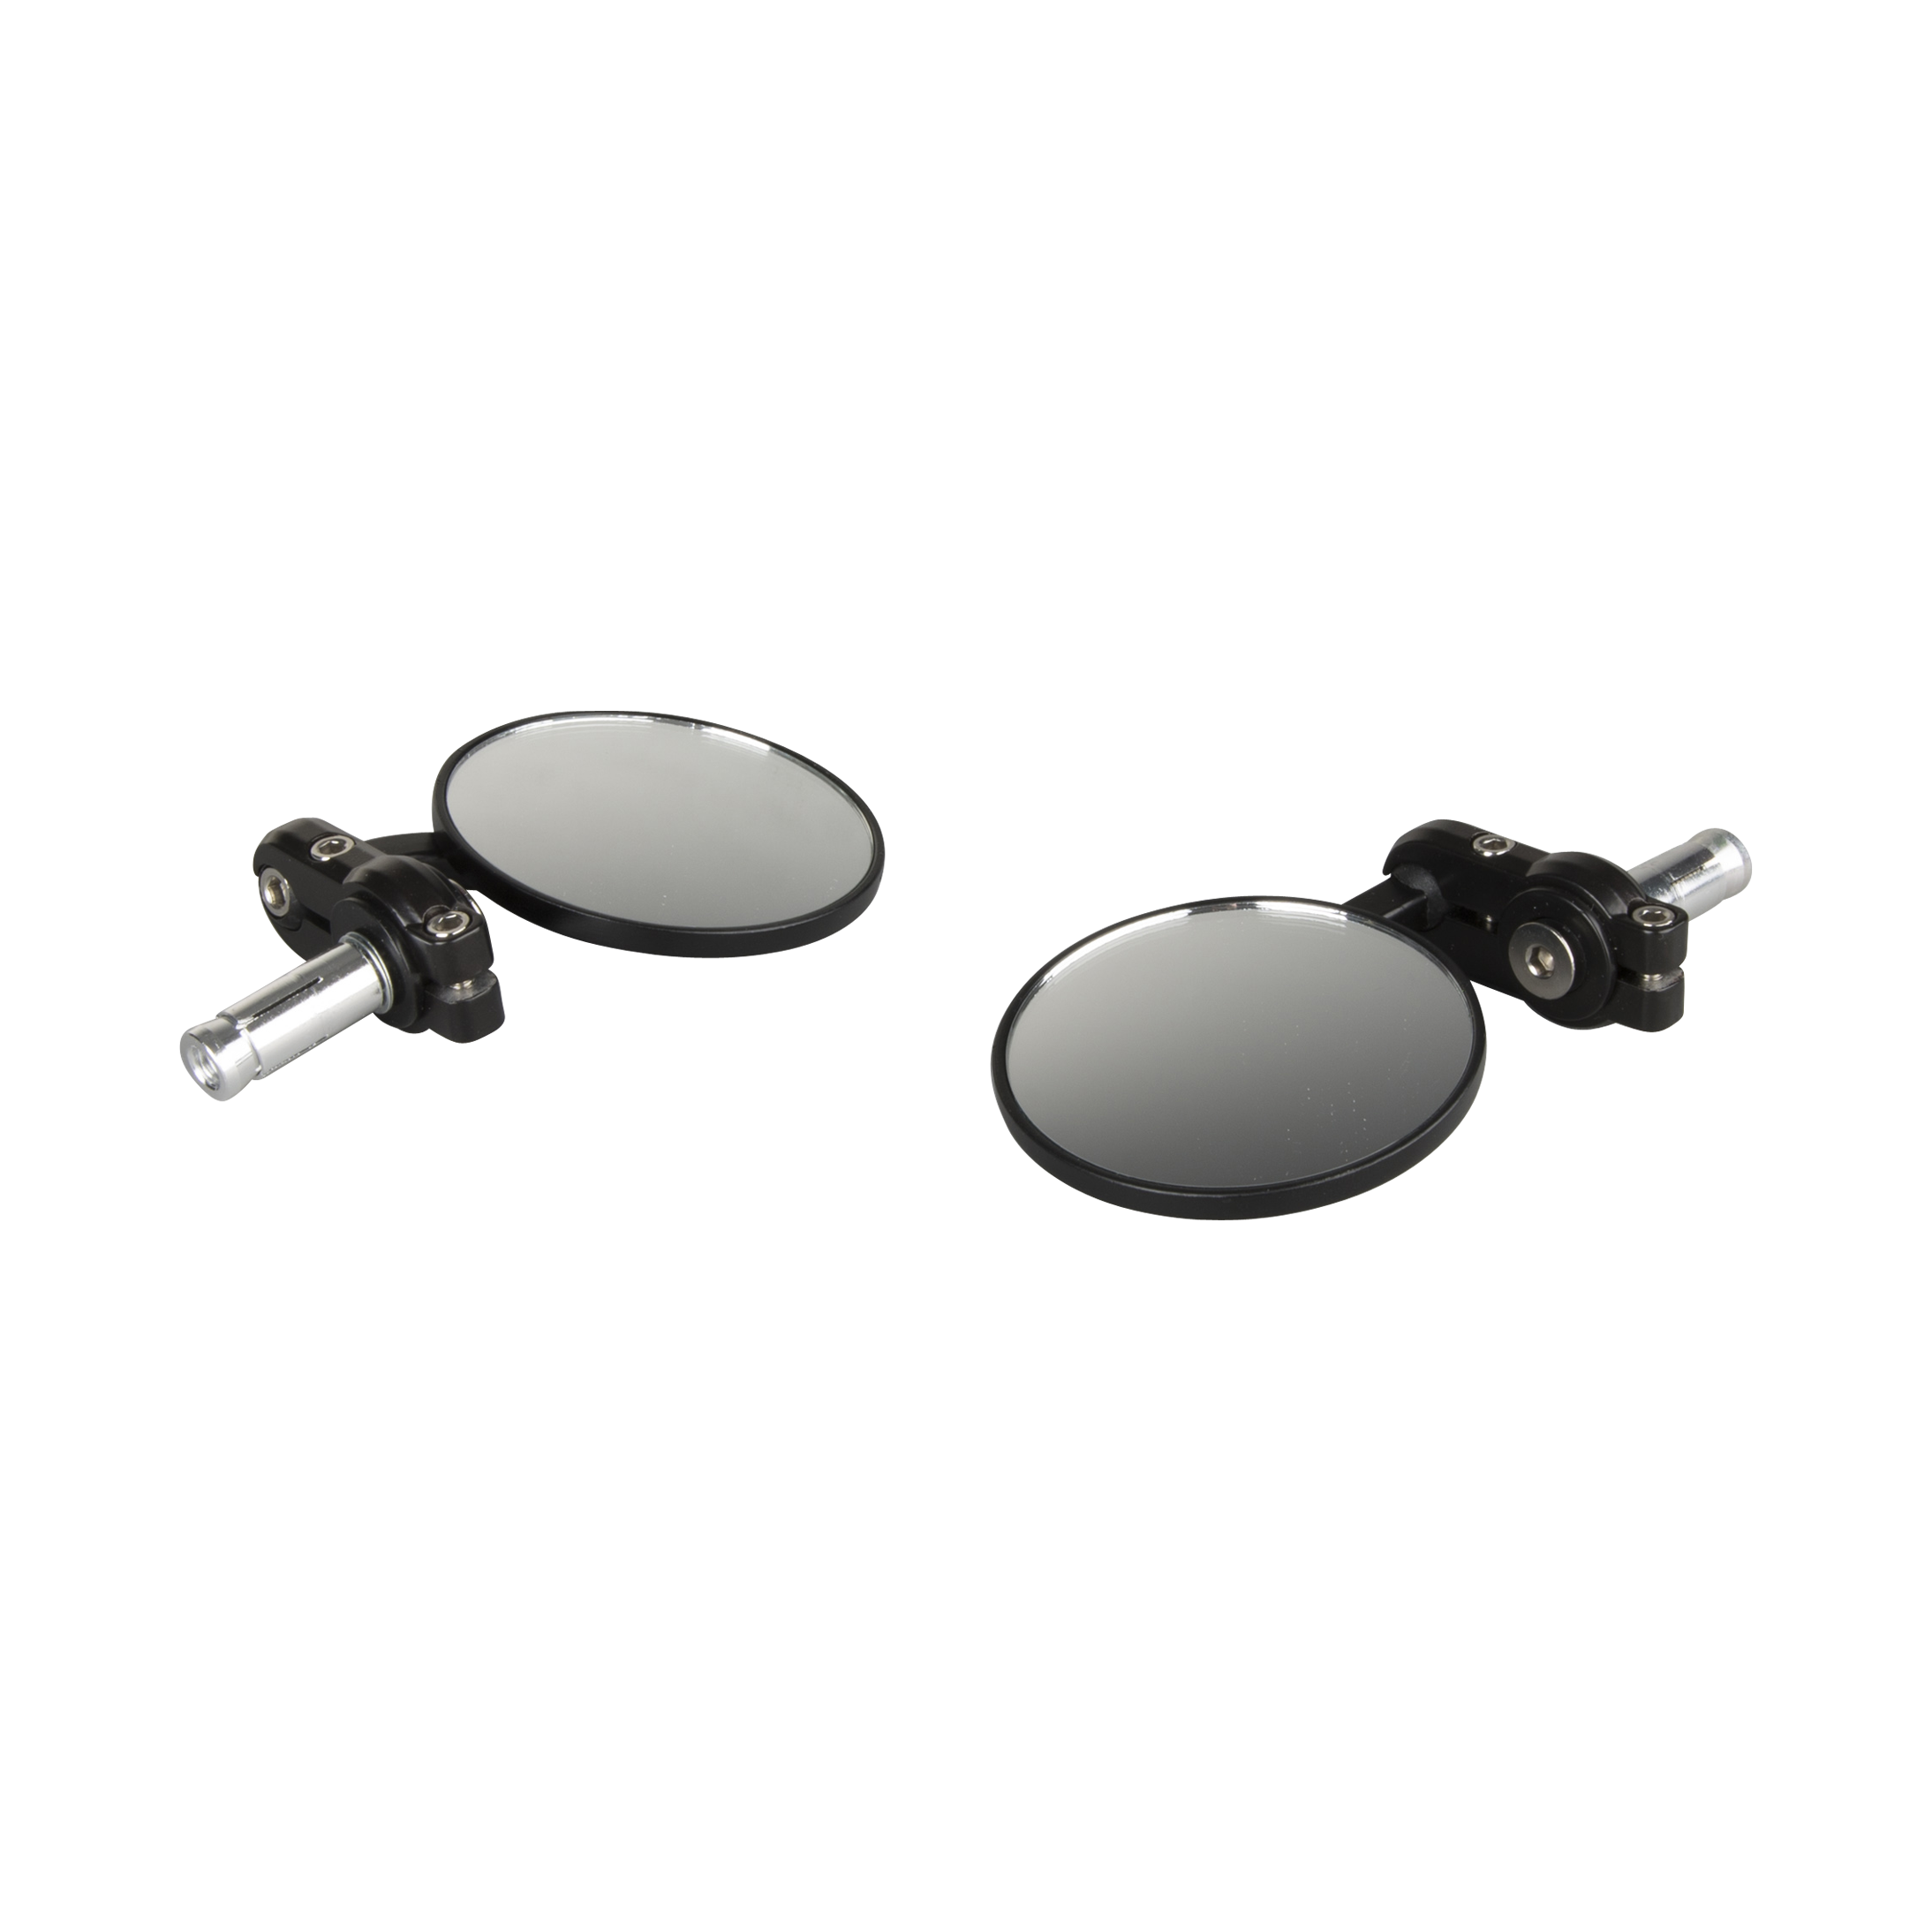 Moto Professional Specchietti Retrovisori Sinistro e Destro